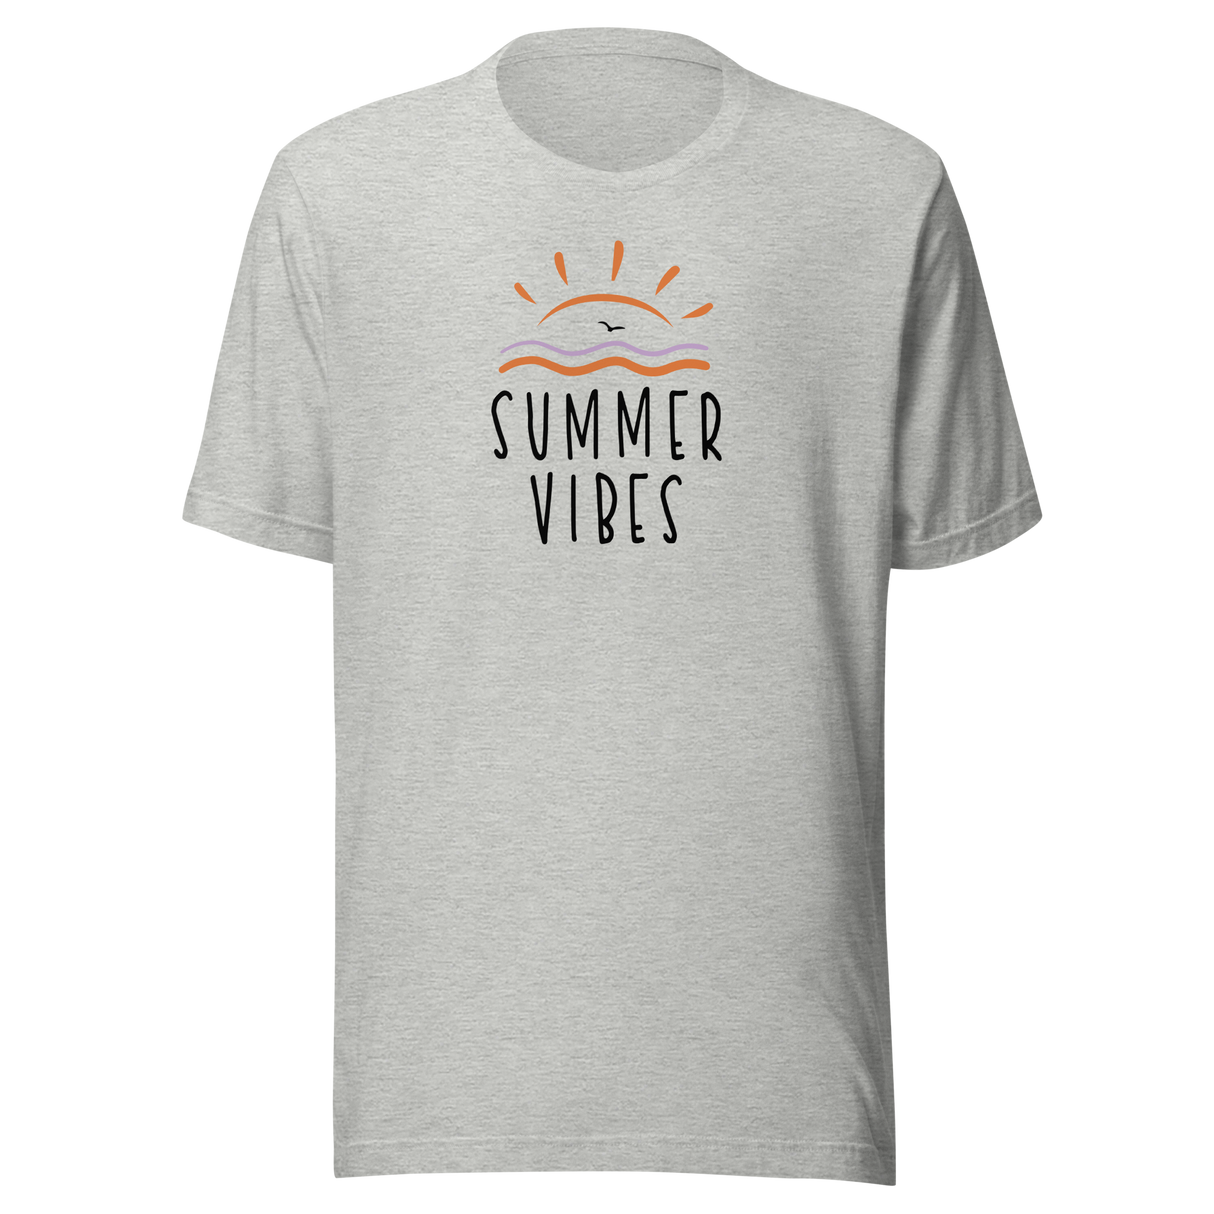 Summer Vibes - Beach Tee - Summer T-Shirt - Beach Tee - Summer T-Shirt - Vibes Tee